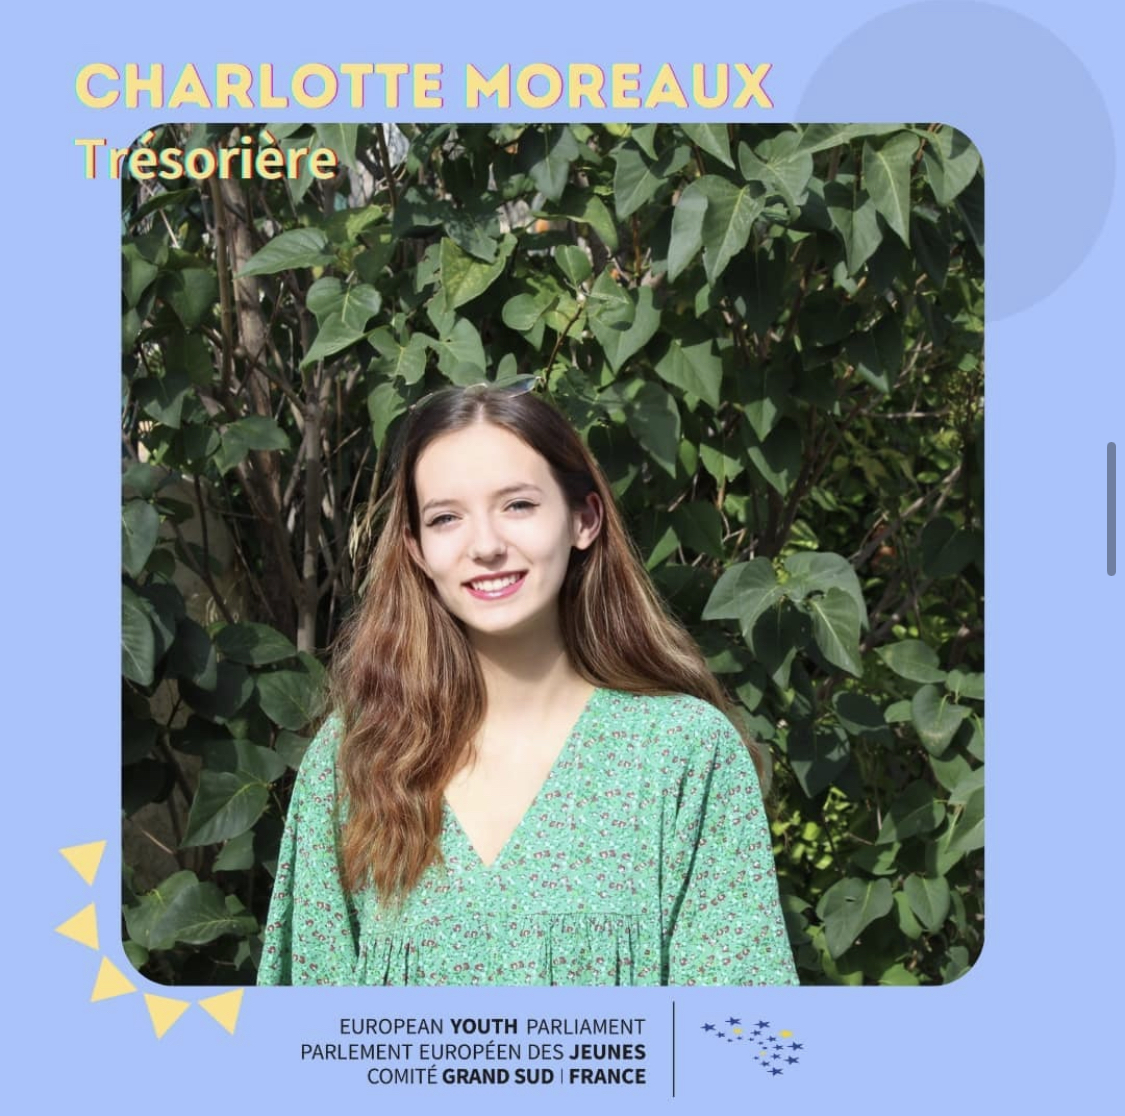 Charlotte Moreaux